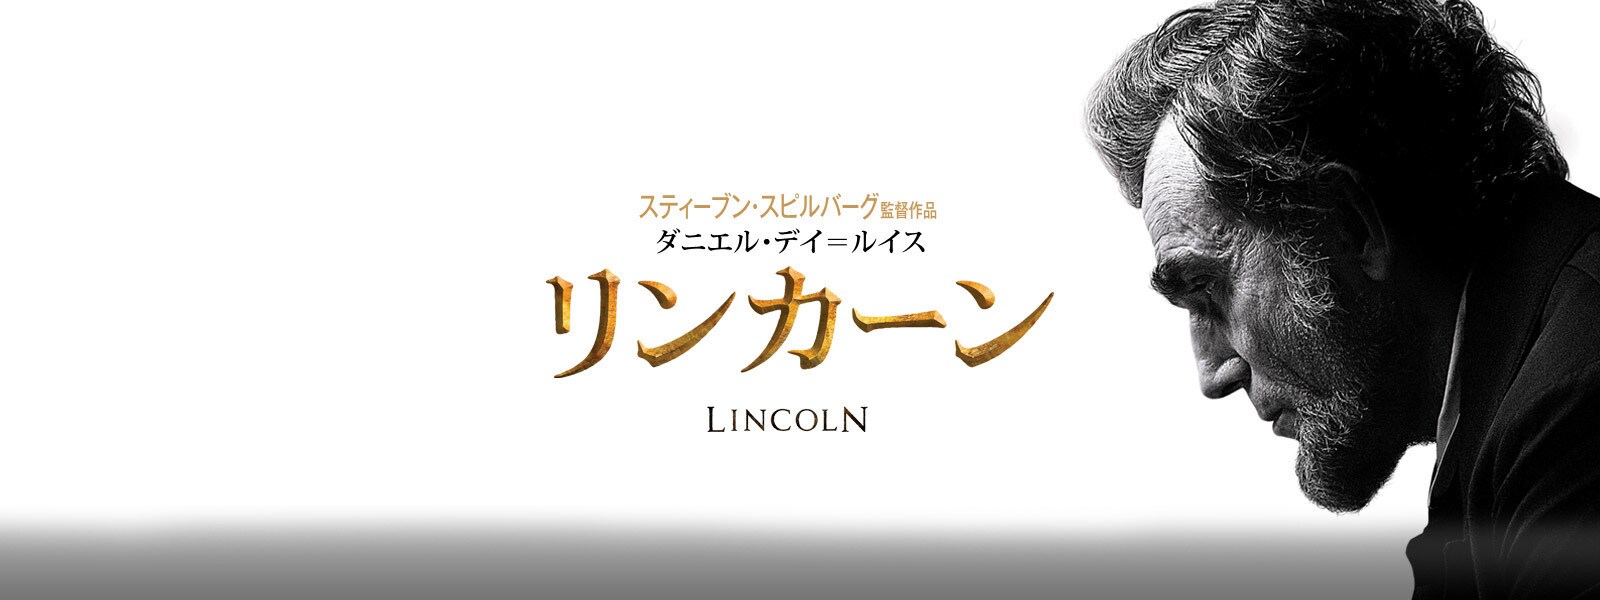 リンカーン Lincoln   Hero